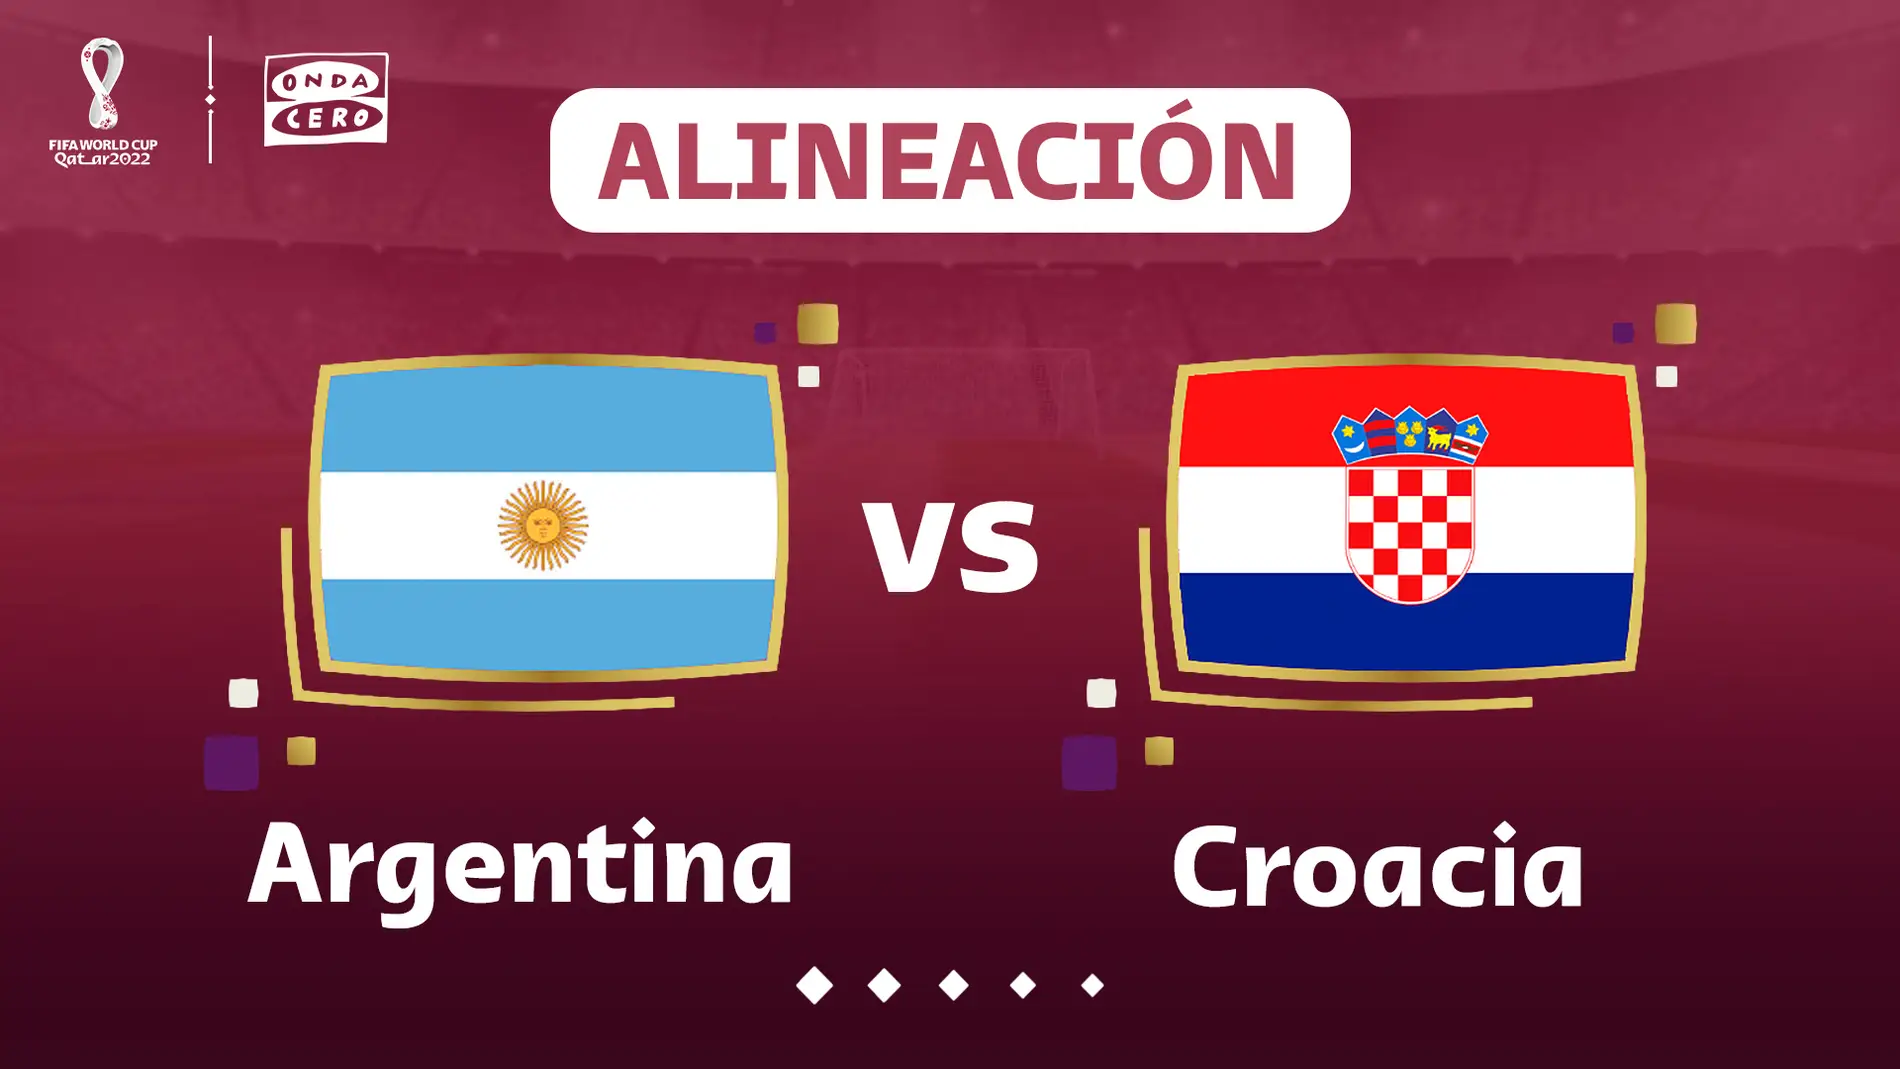 Alineación Argentina y Croacia hoy la semifinal del de Qatar | Onda Cero Radio